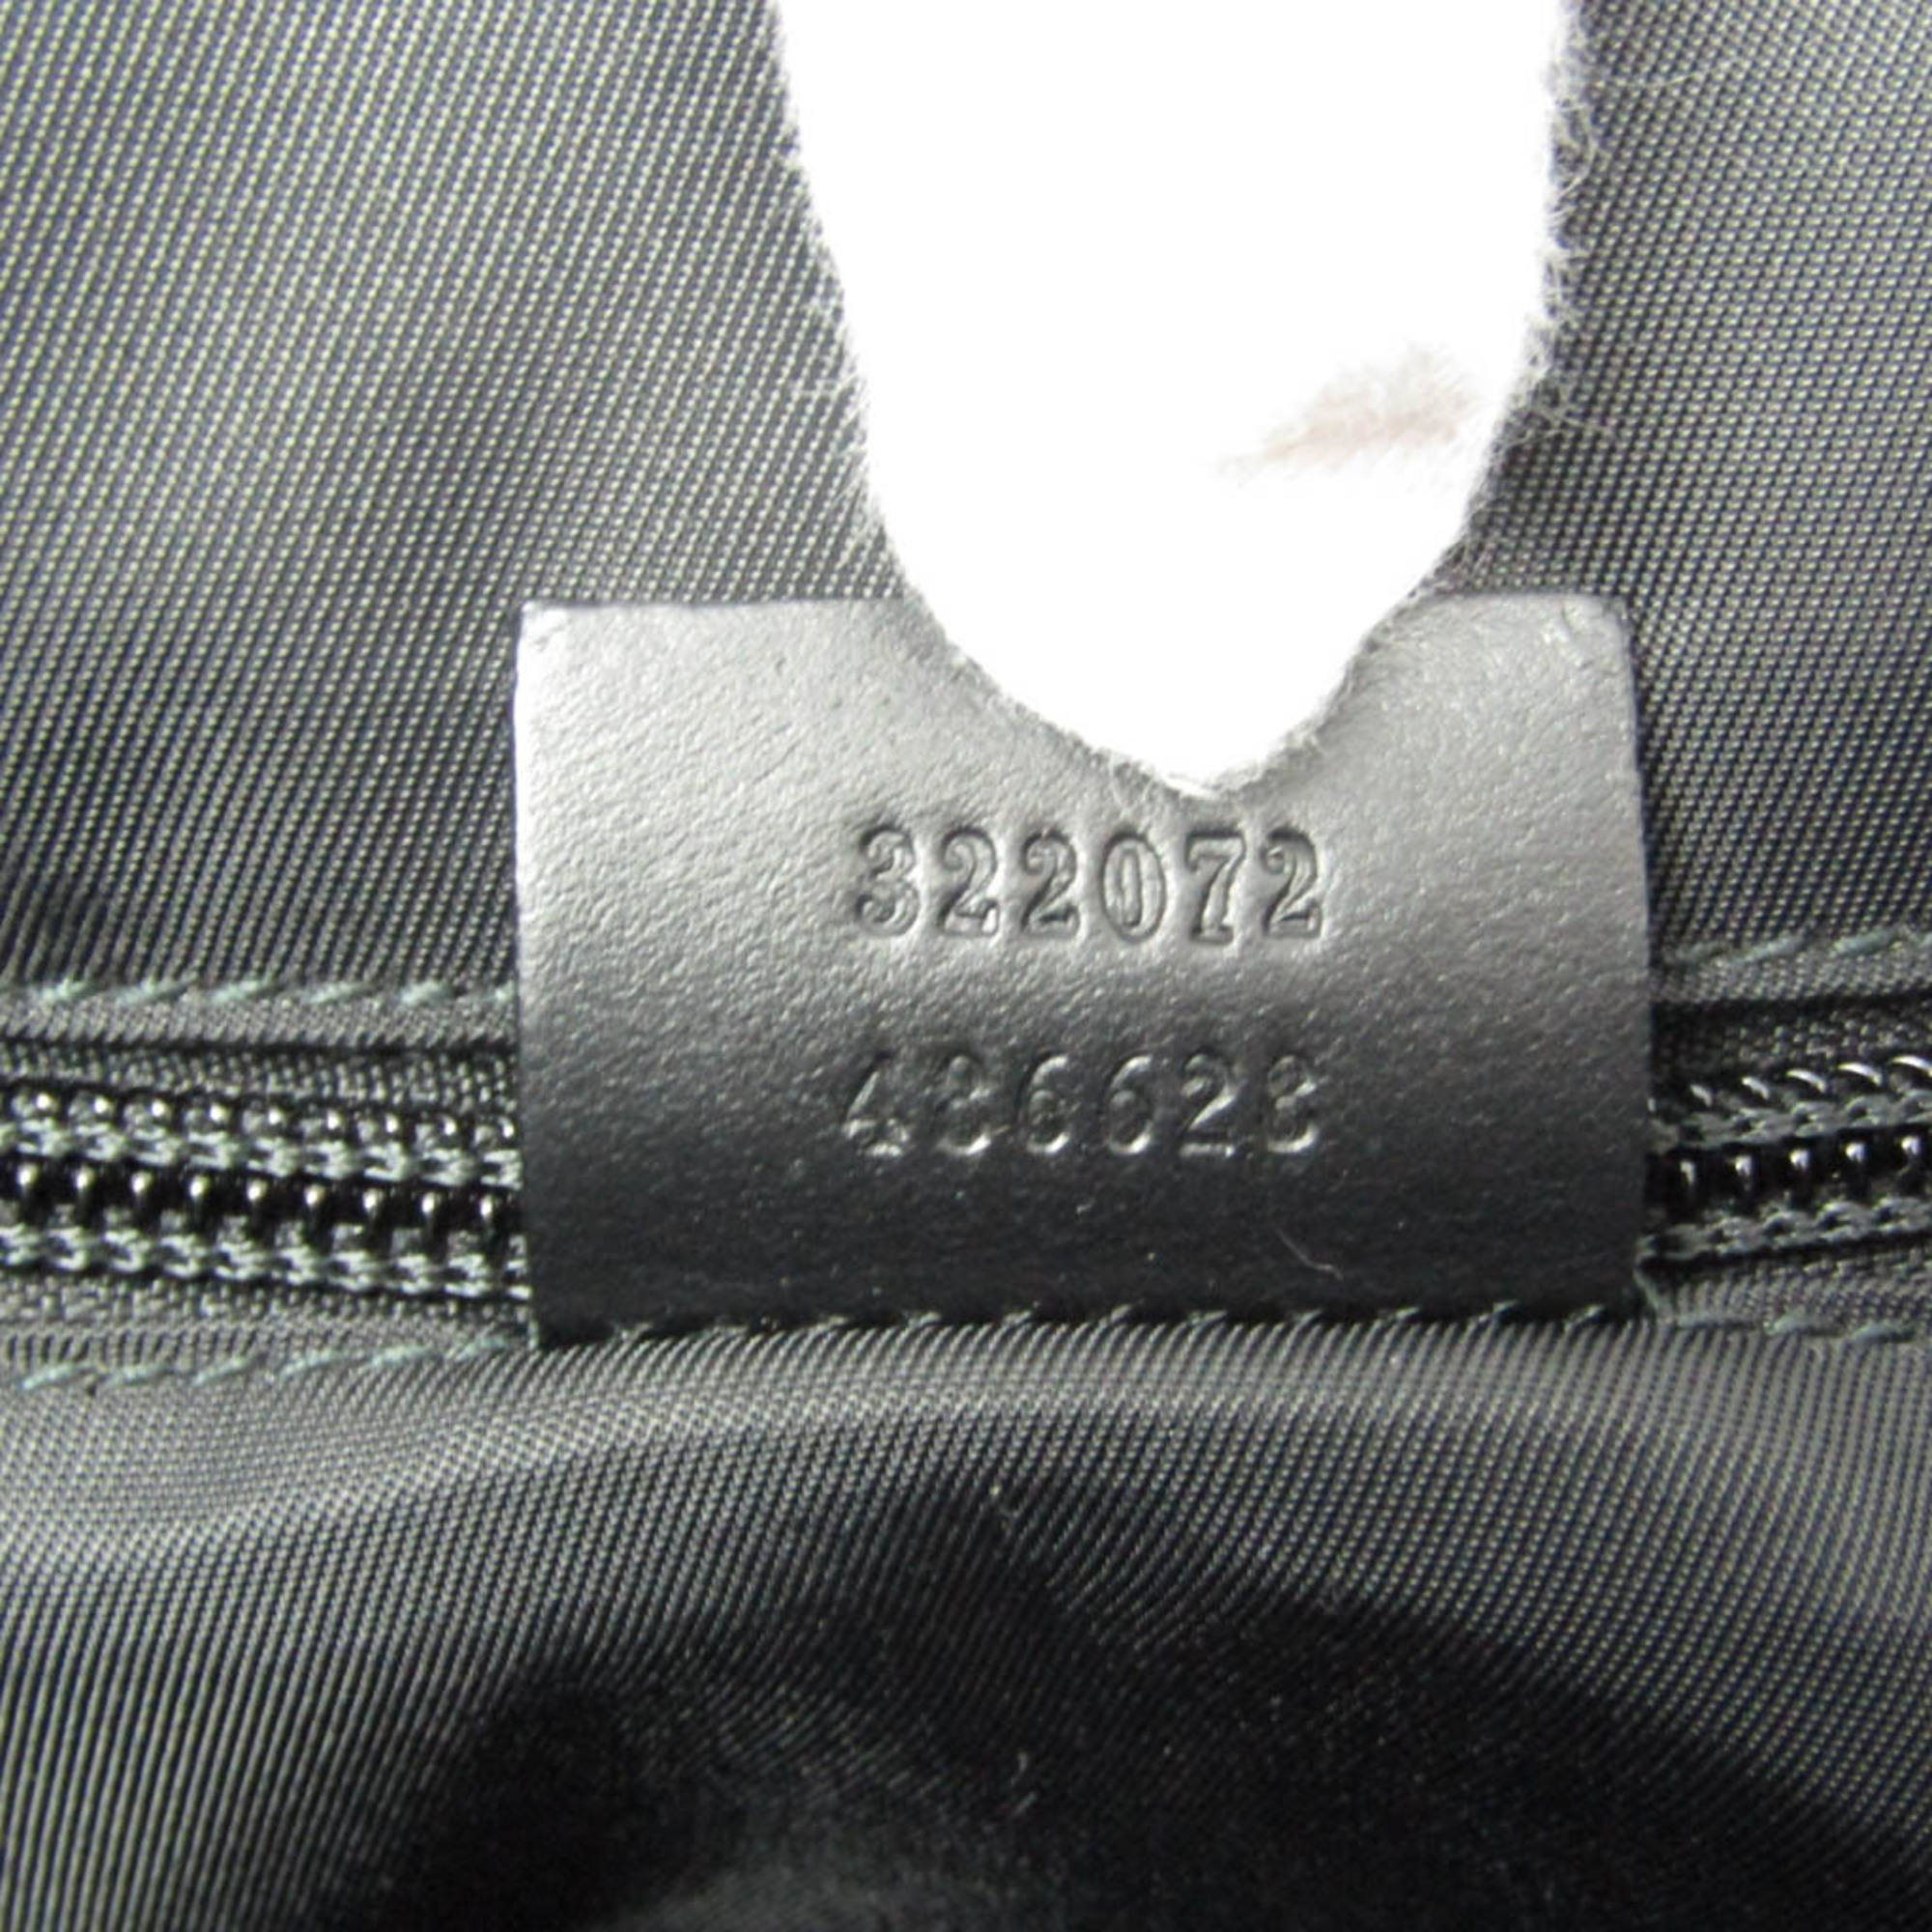 グッチ(Gucci) GGスプリーム 322072 メンズ コーティングキャンバス ハンドバッグ,トートバッグ ブラック,ダークグレー